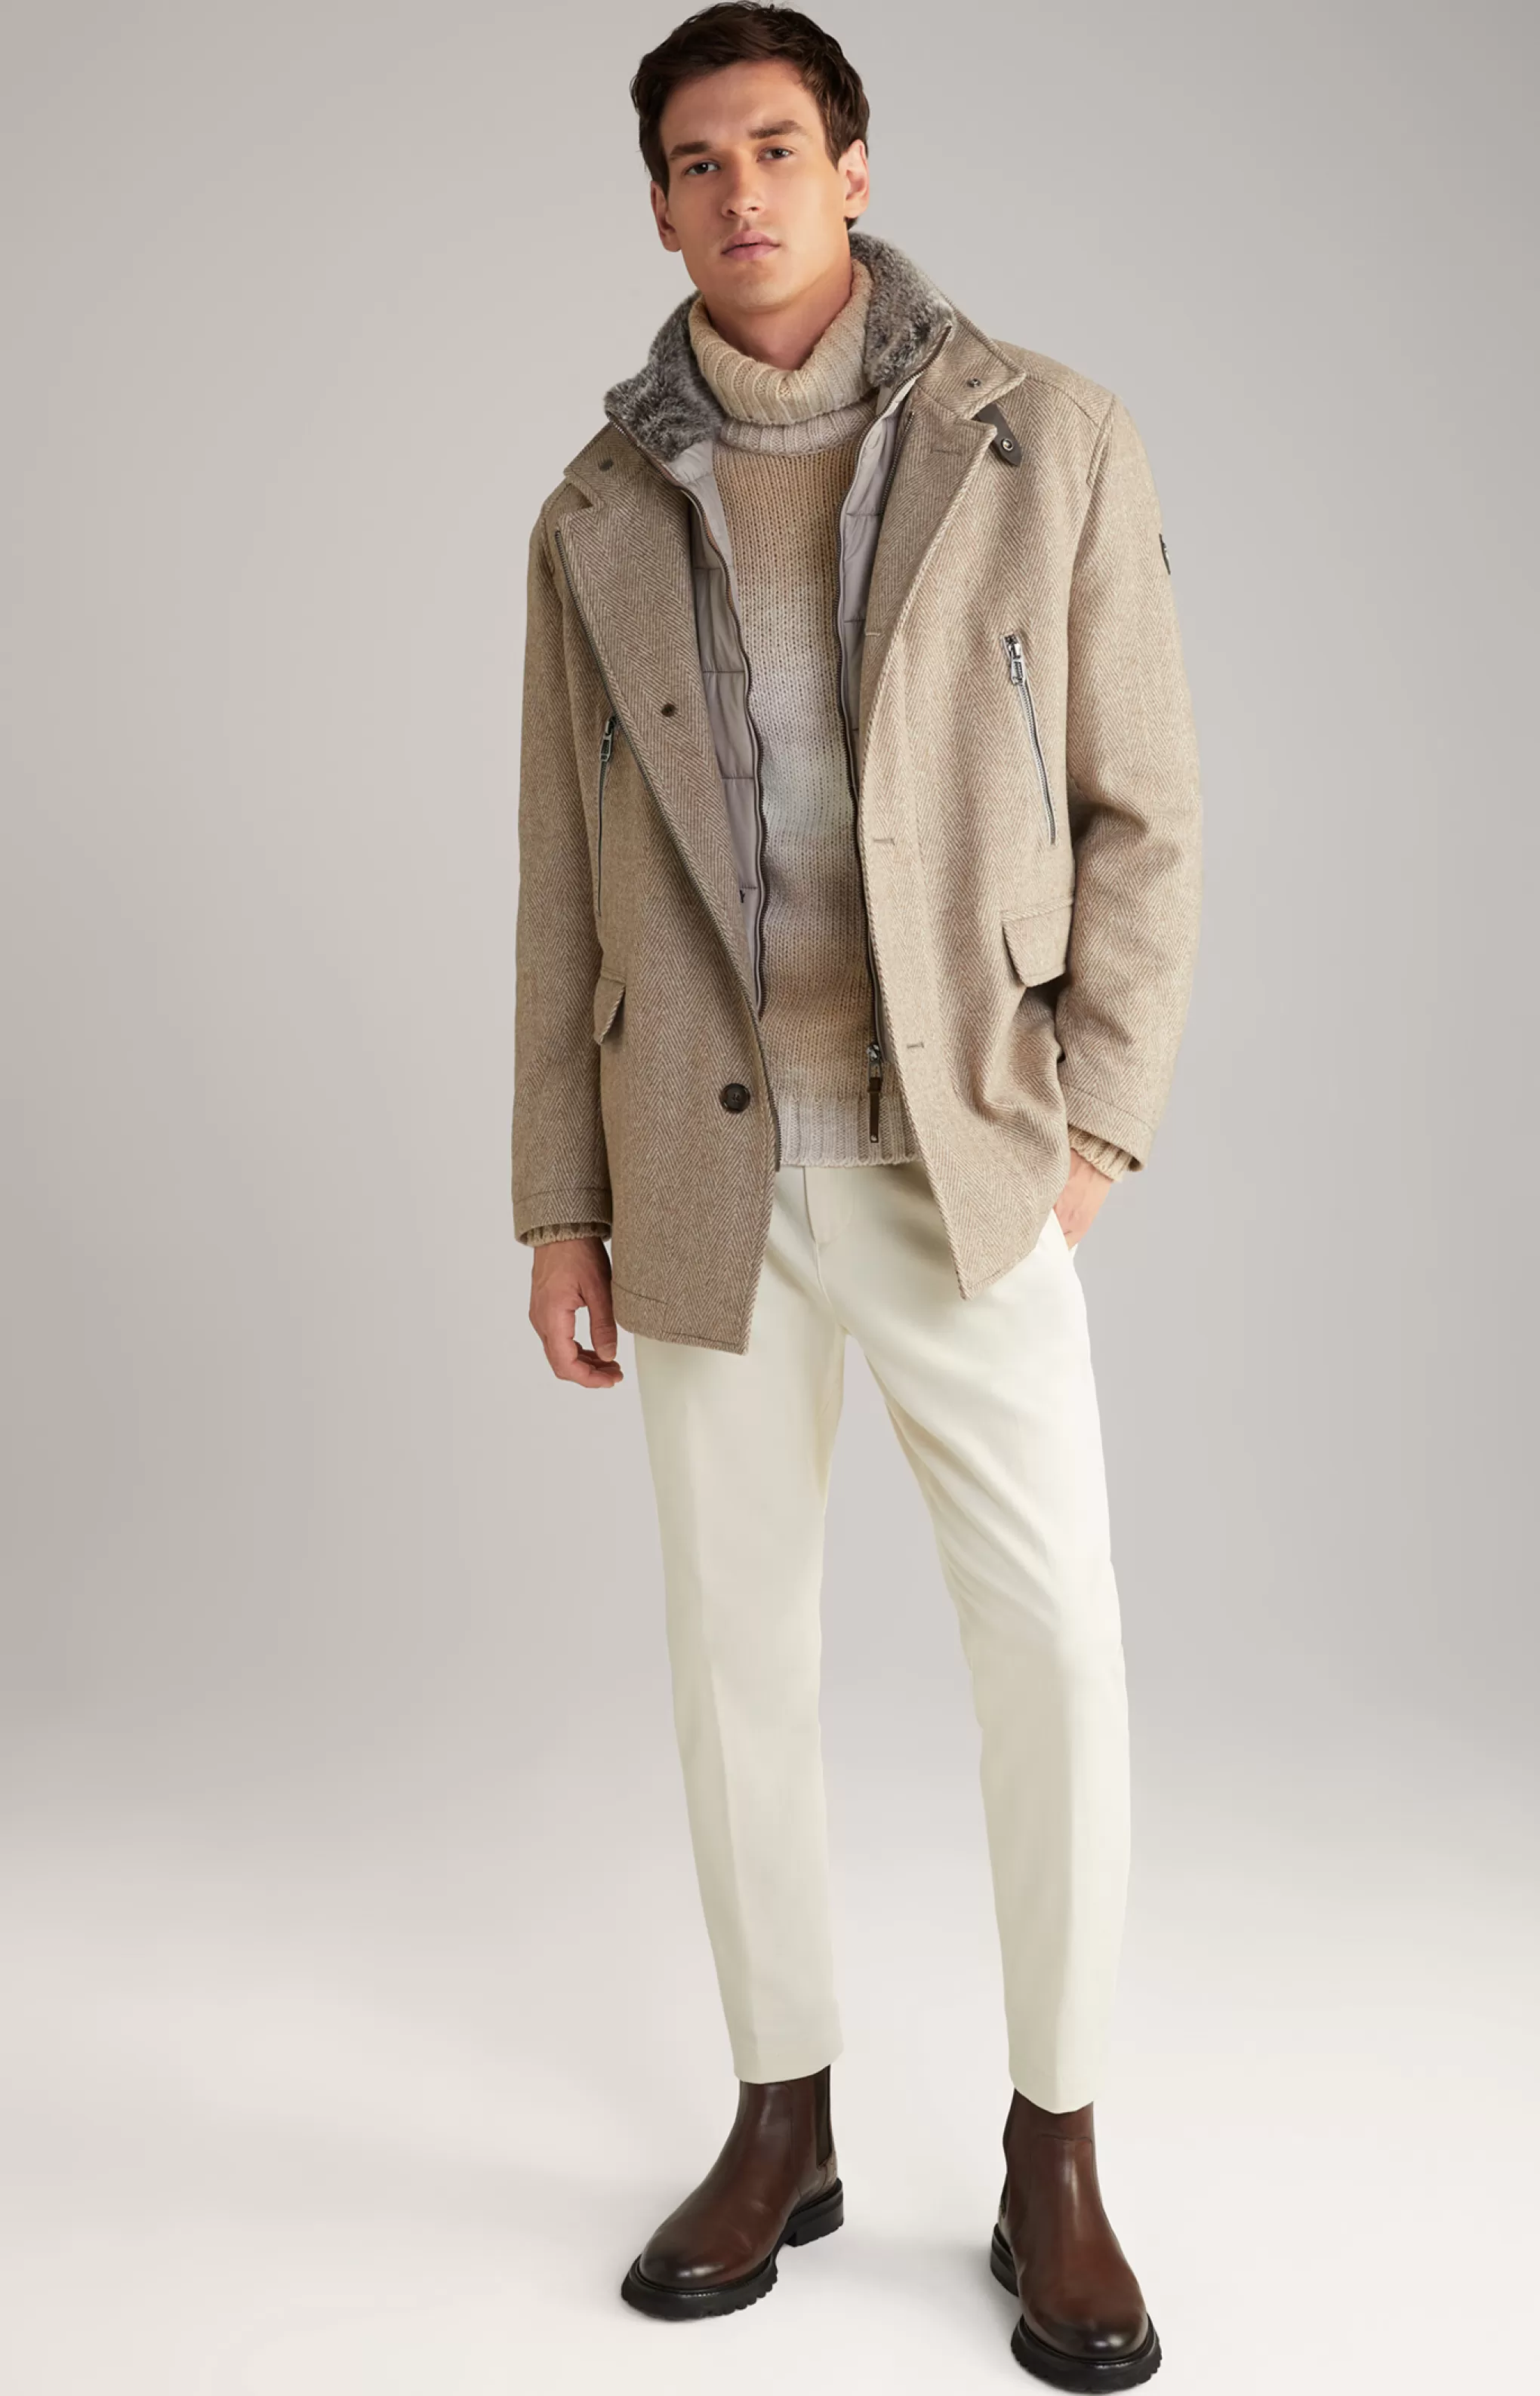 Coats | Jackets | Clothing*JOOP Coats | Jackets | Clothing Gary Coat in a Pattern